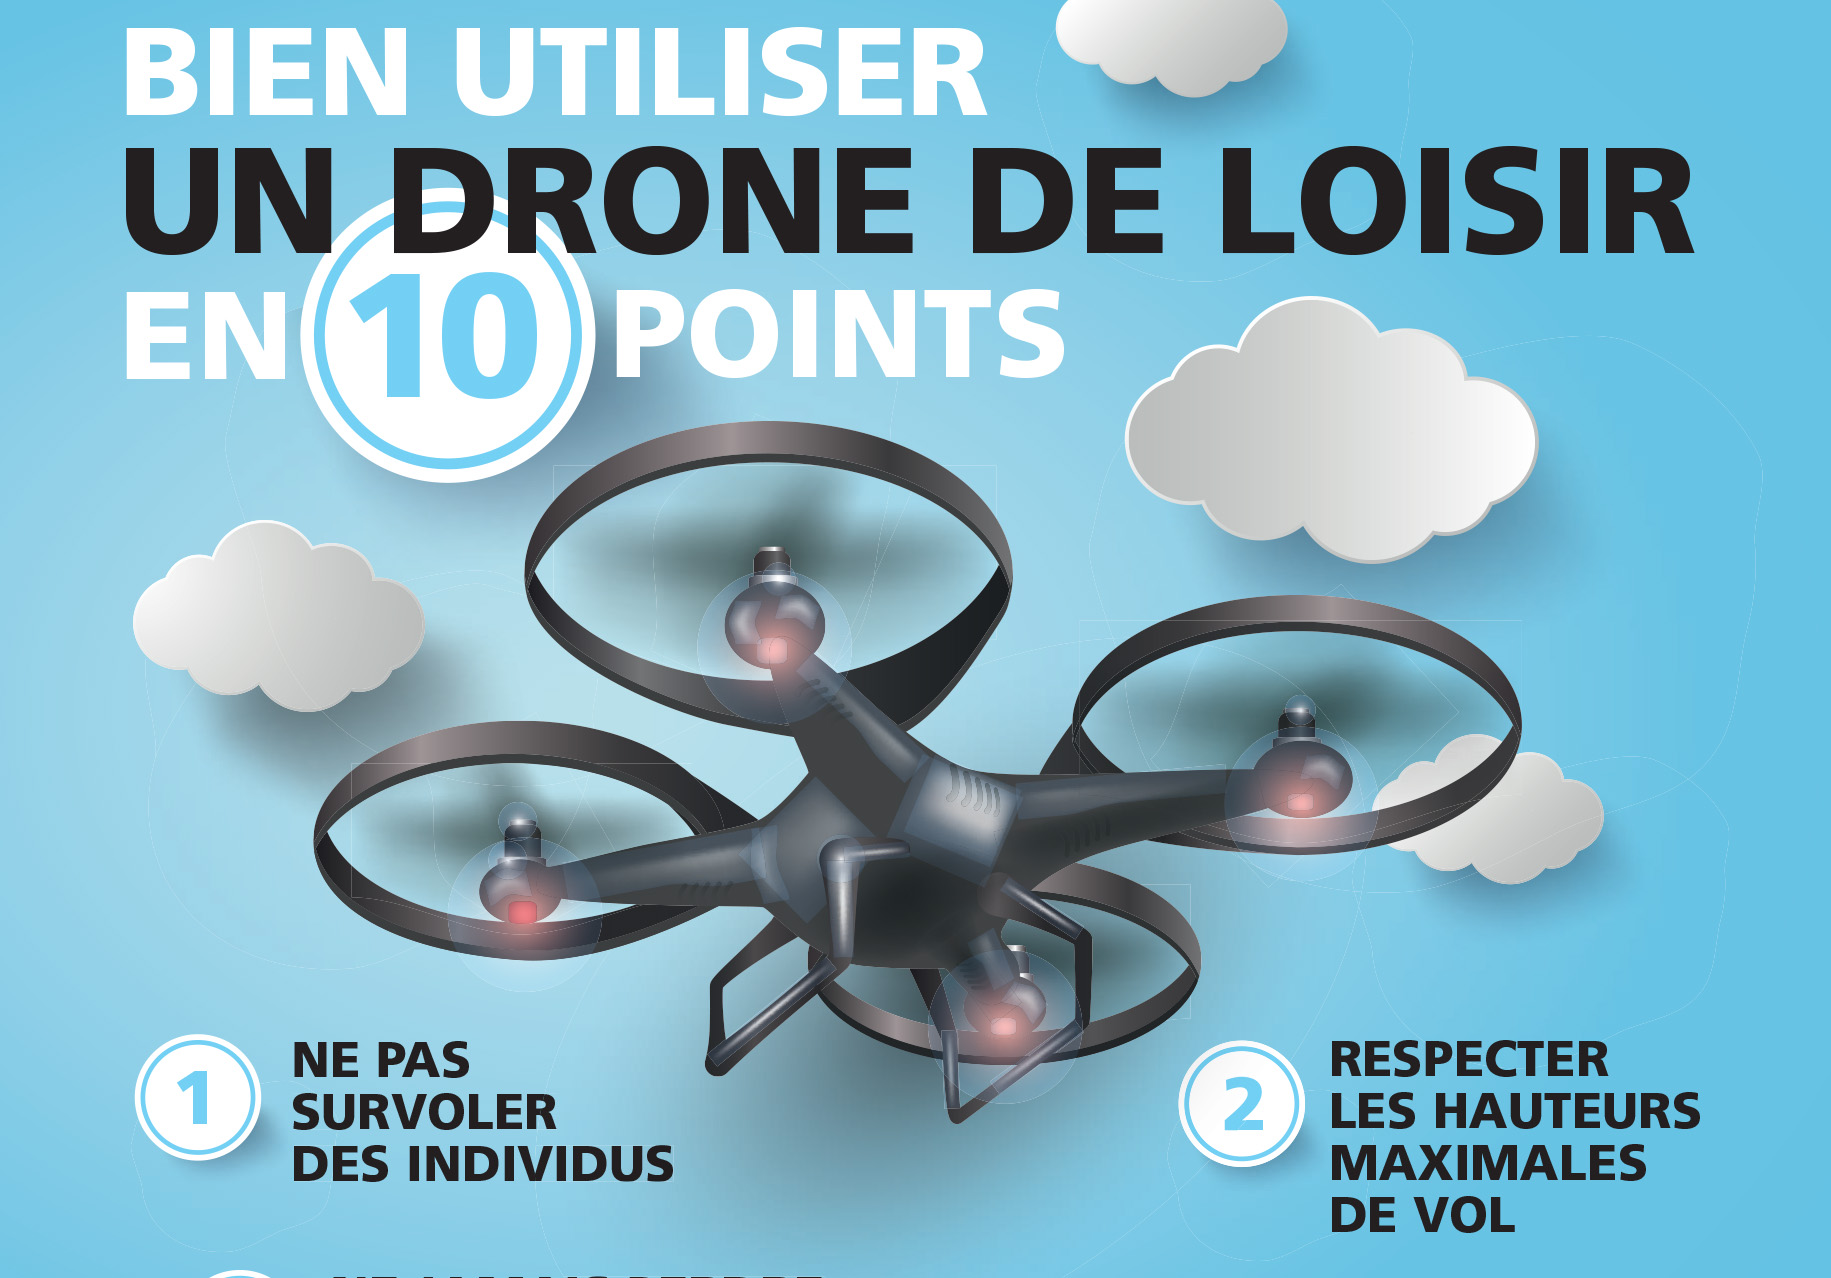 La notice pour les drones de loisir, version Police